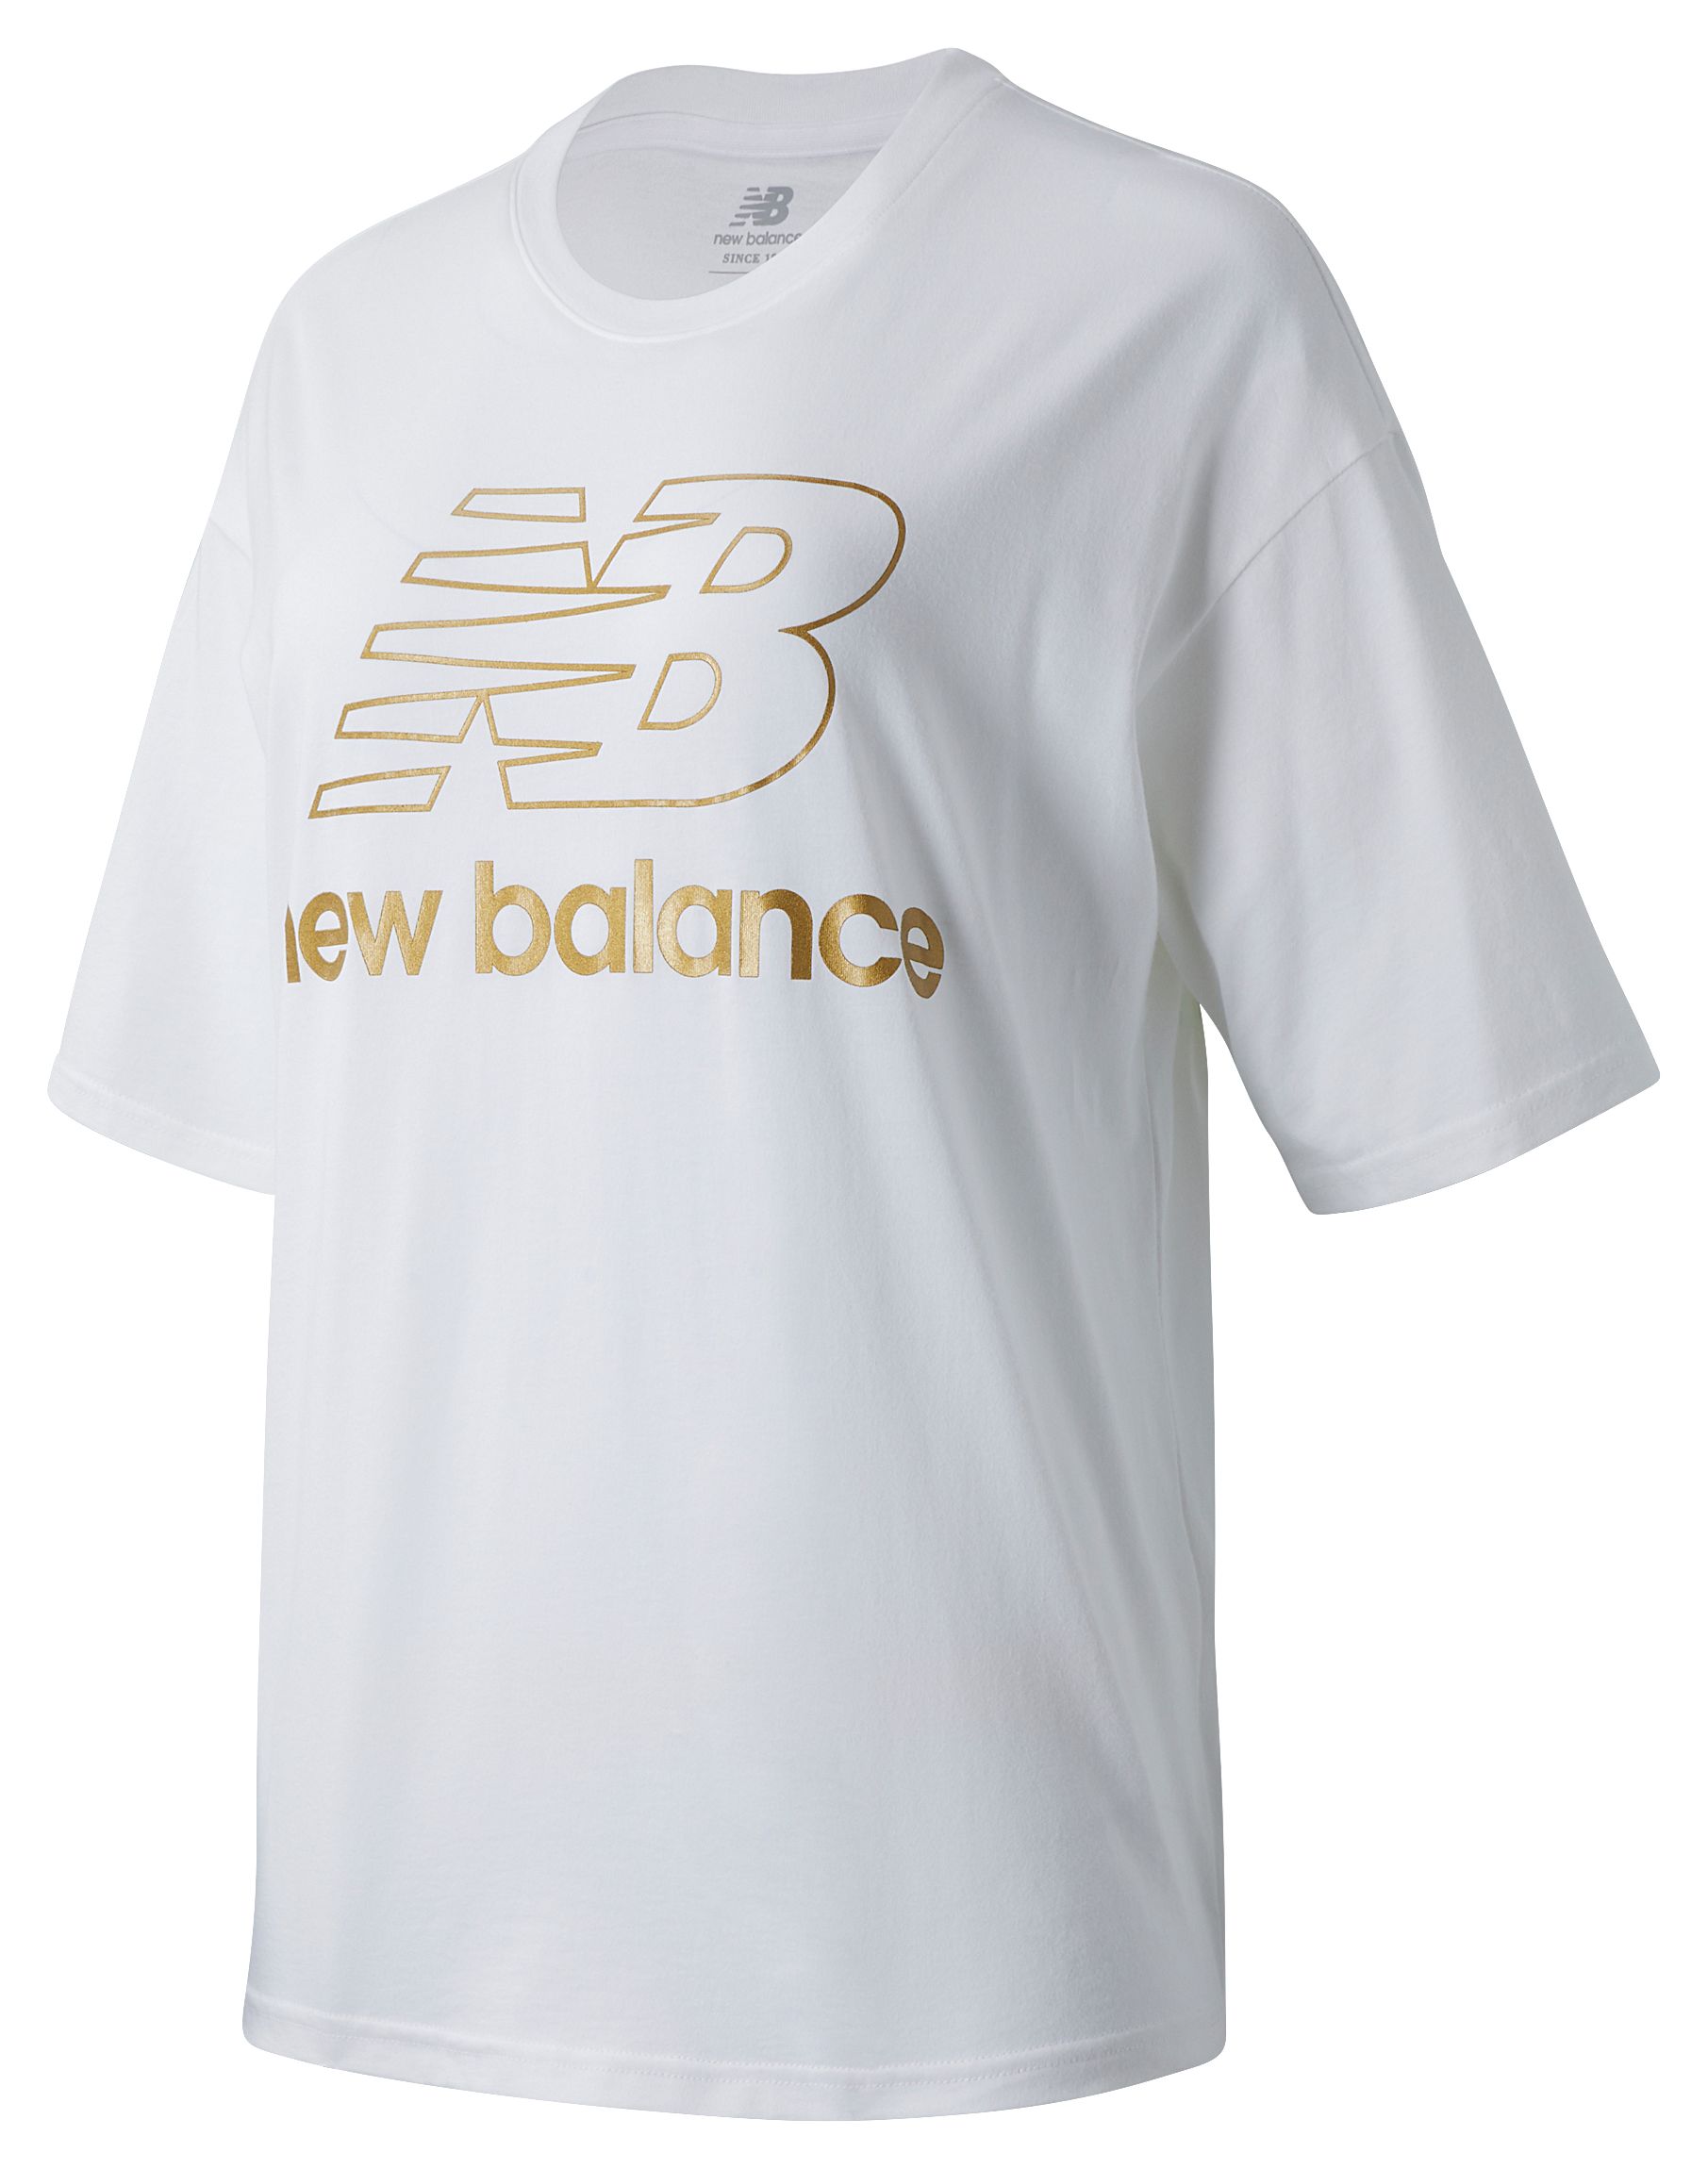 new balance run boston shirt